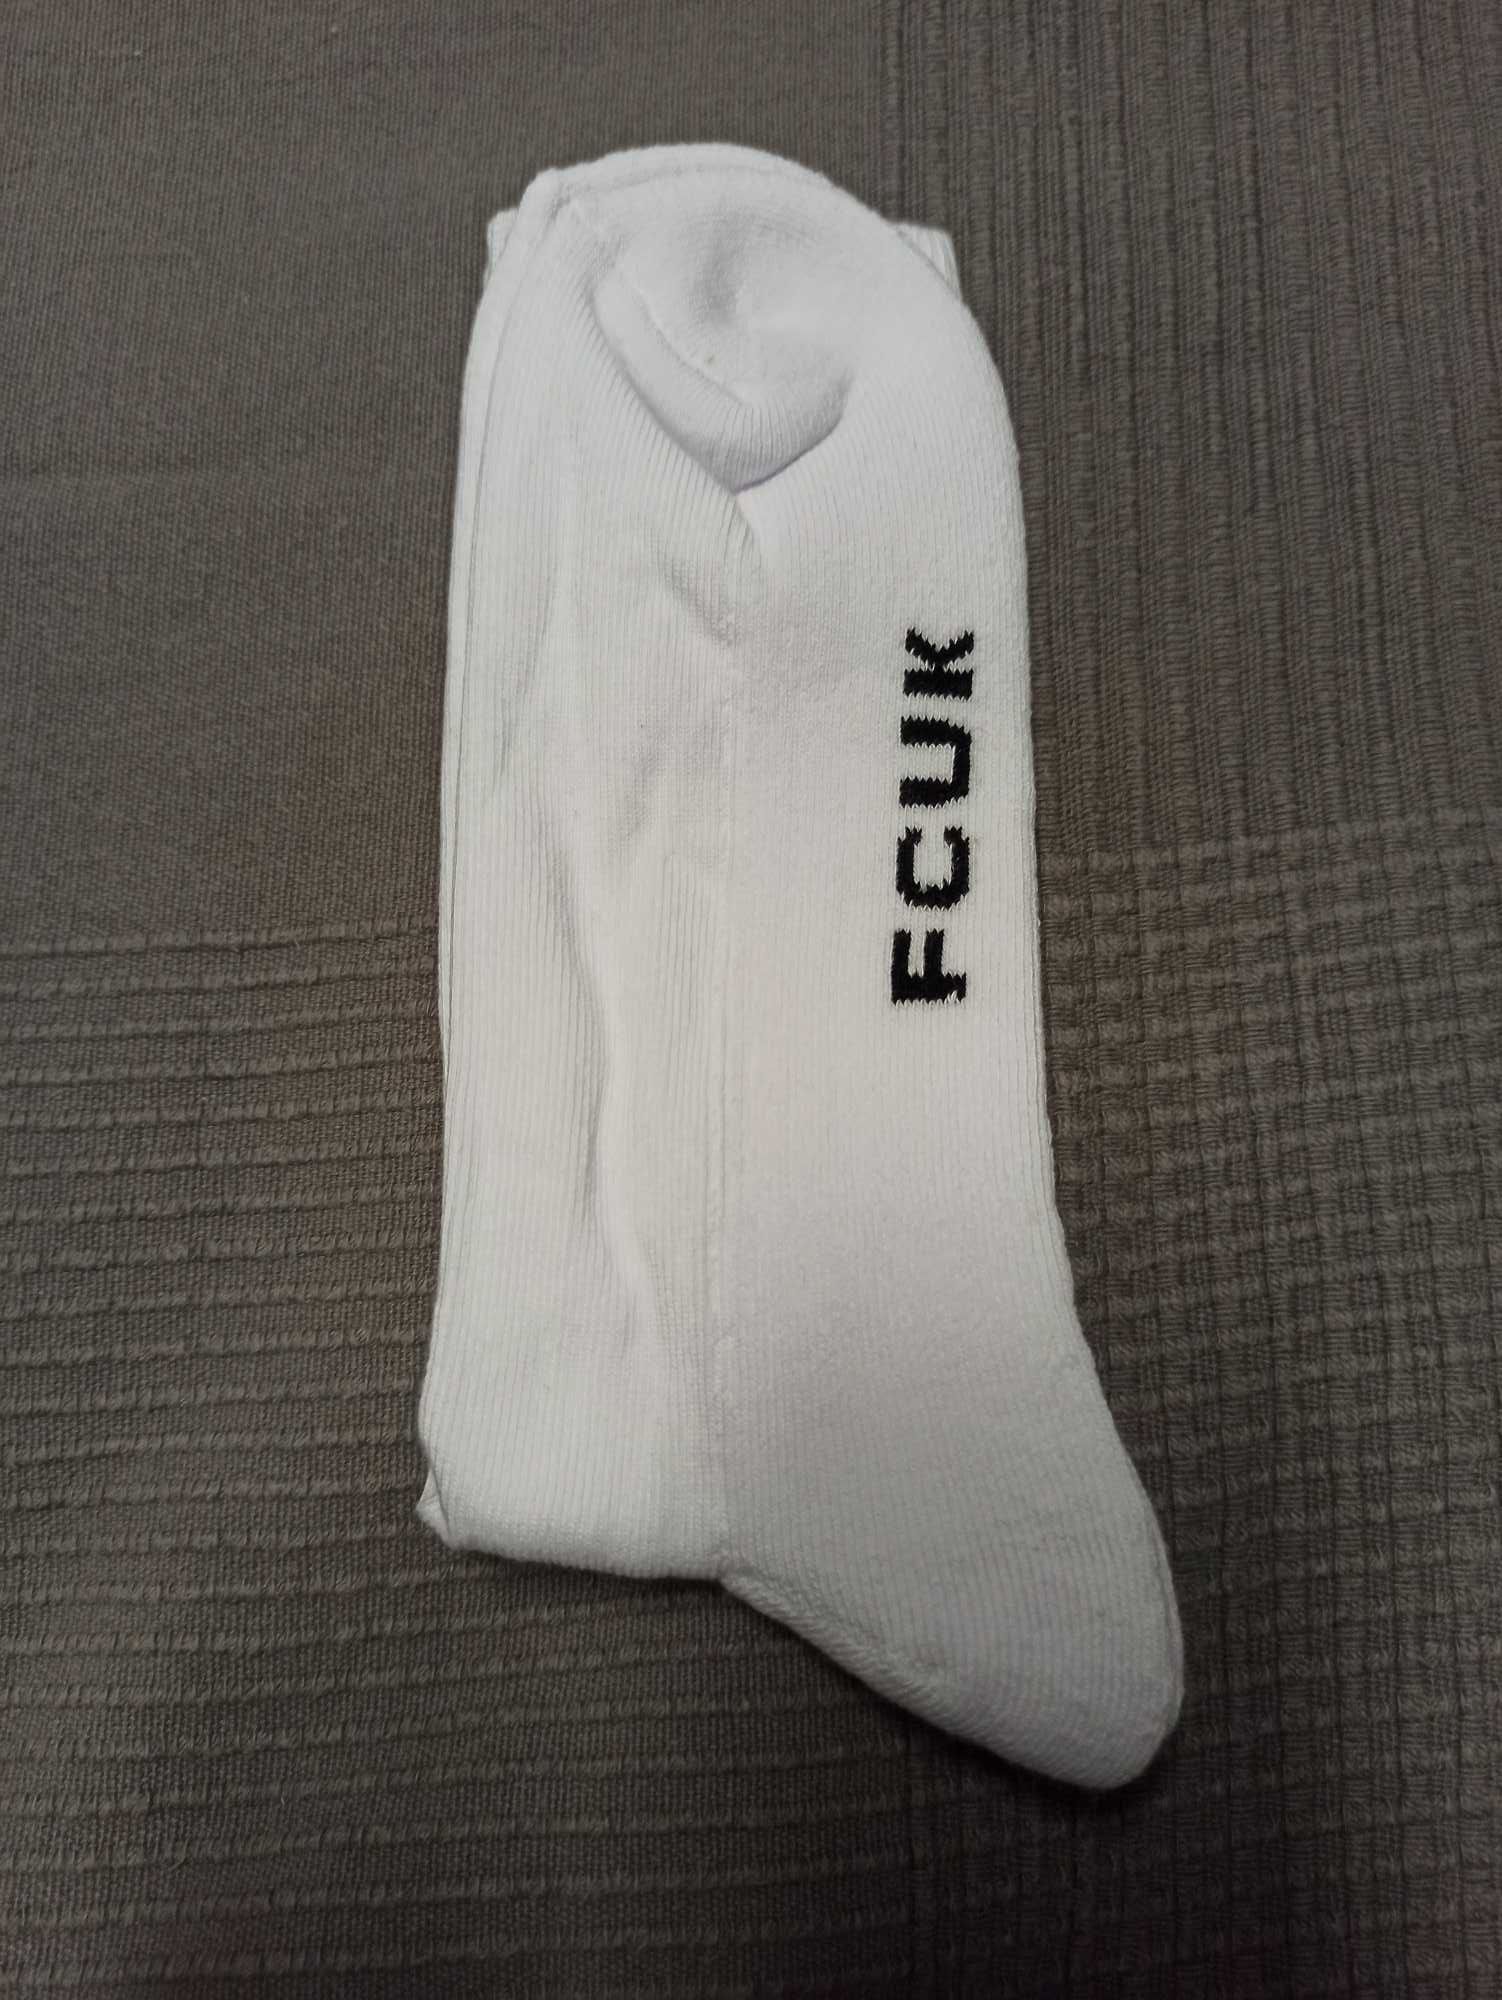 Białe skarpety FCUK rozmiar 40-46 one size white socks soxy sport fun